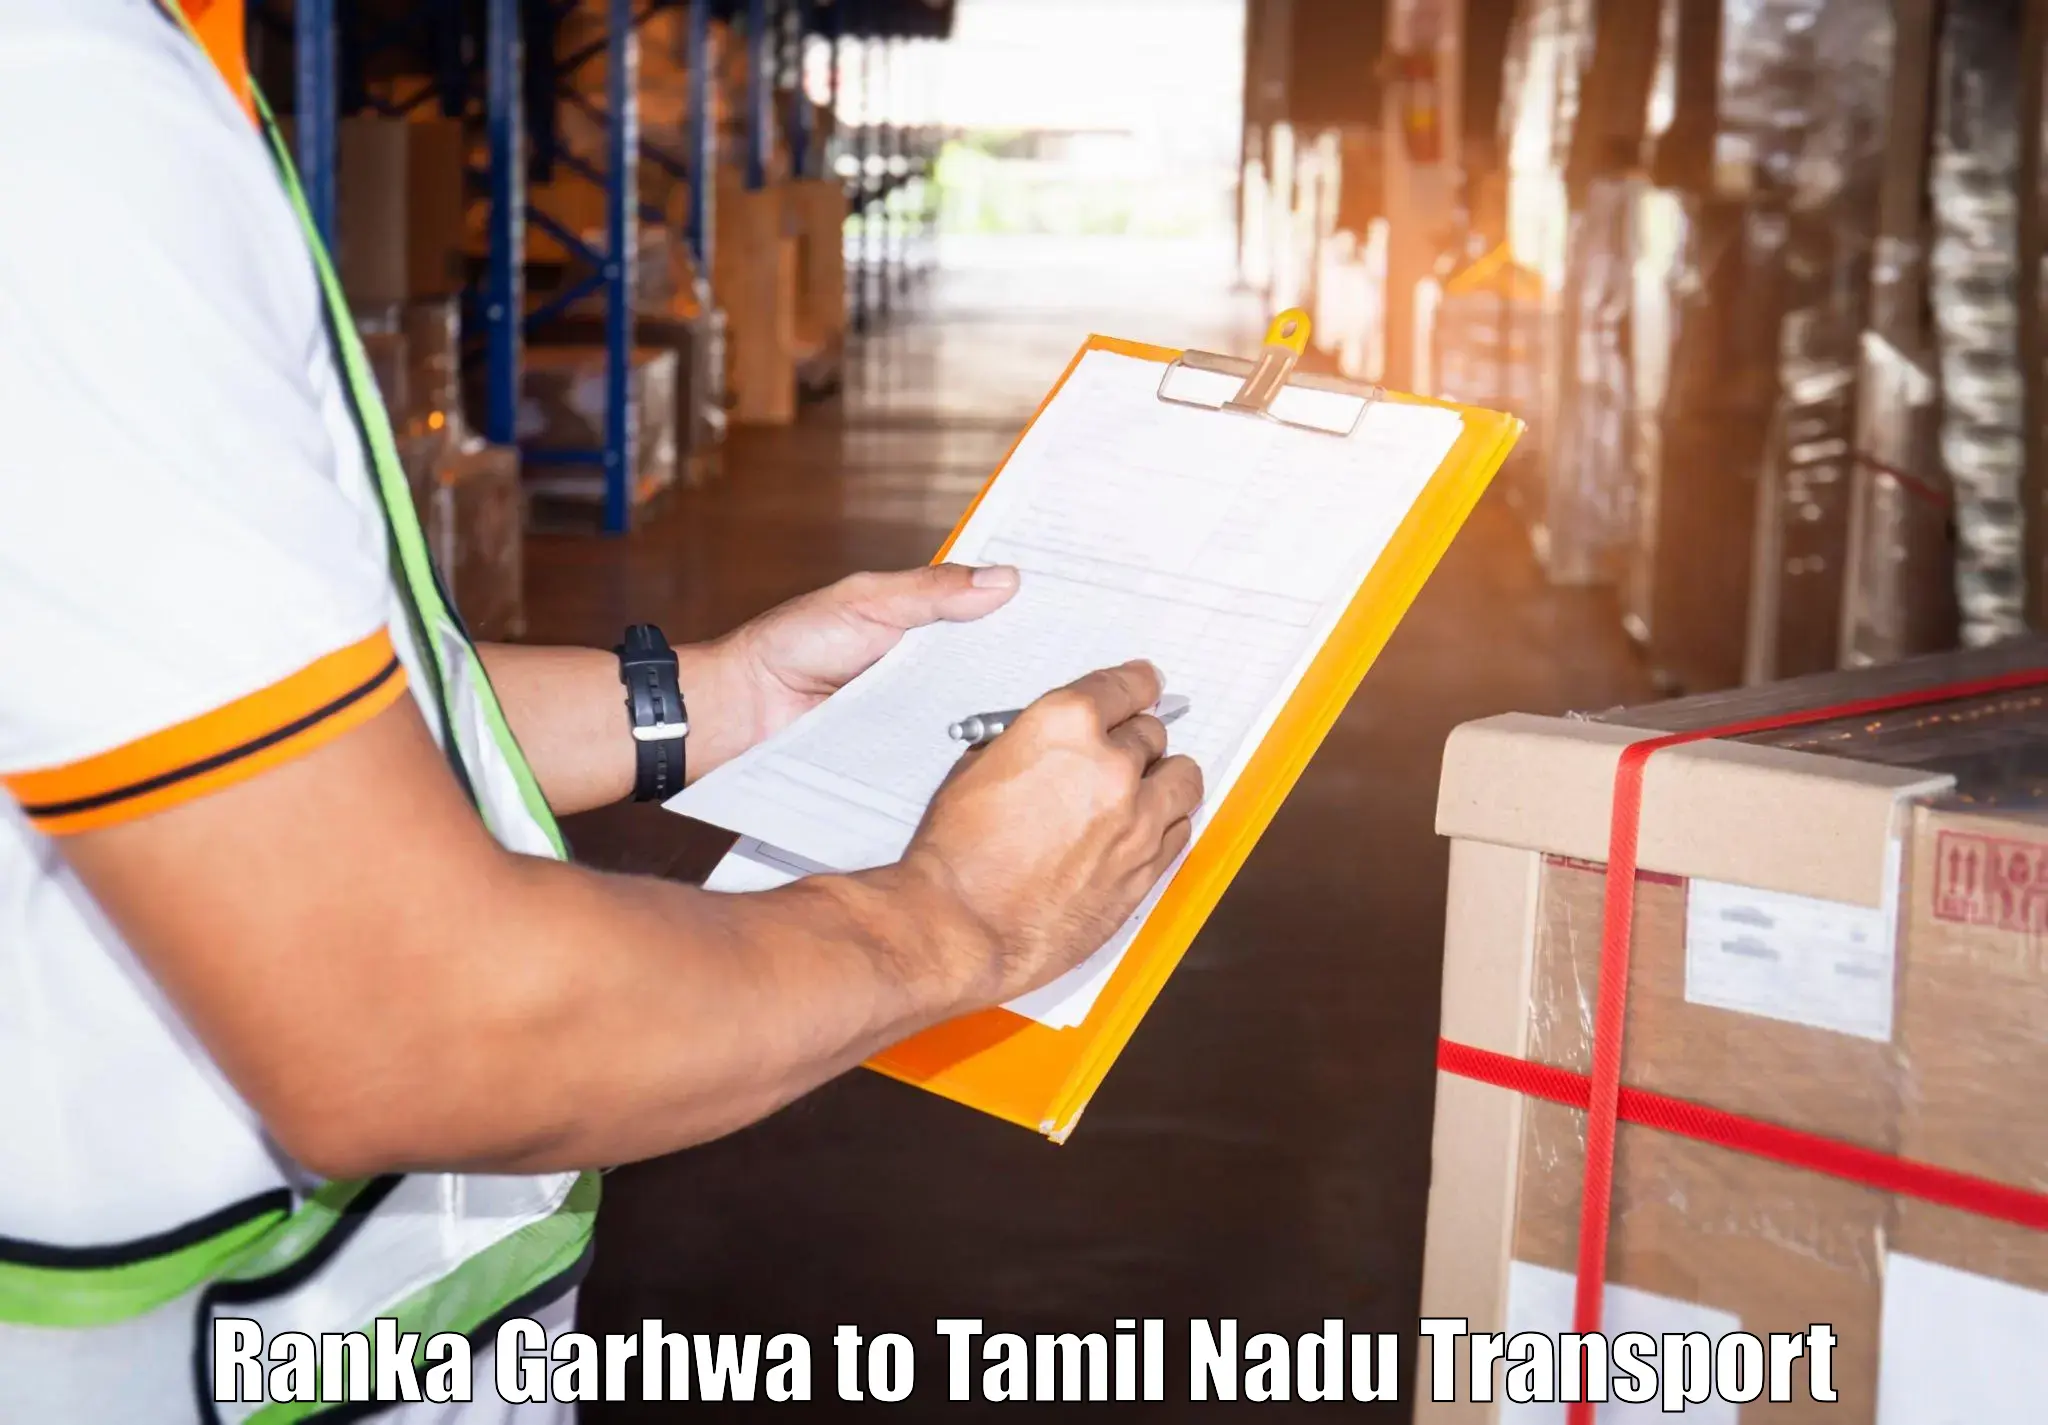 Furniture transport service Ranka Garhwa to Aranthangi